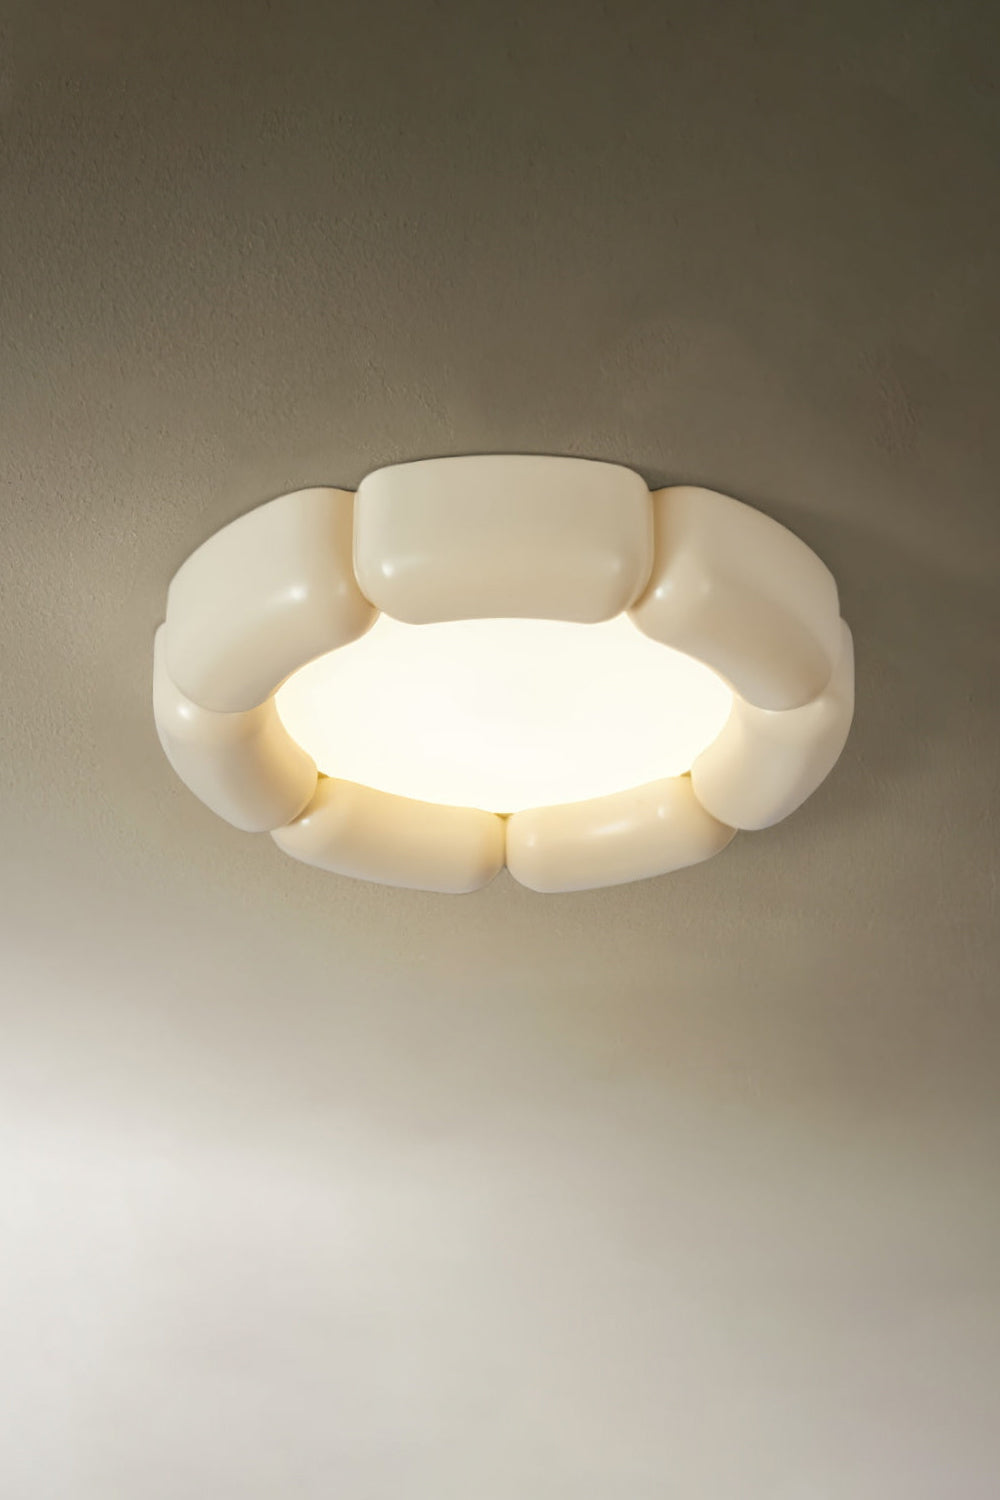 Deco Ceiling Lamp - SamuLighting